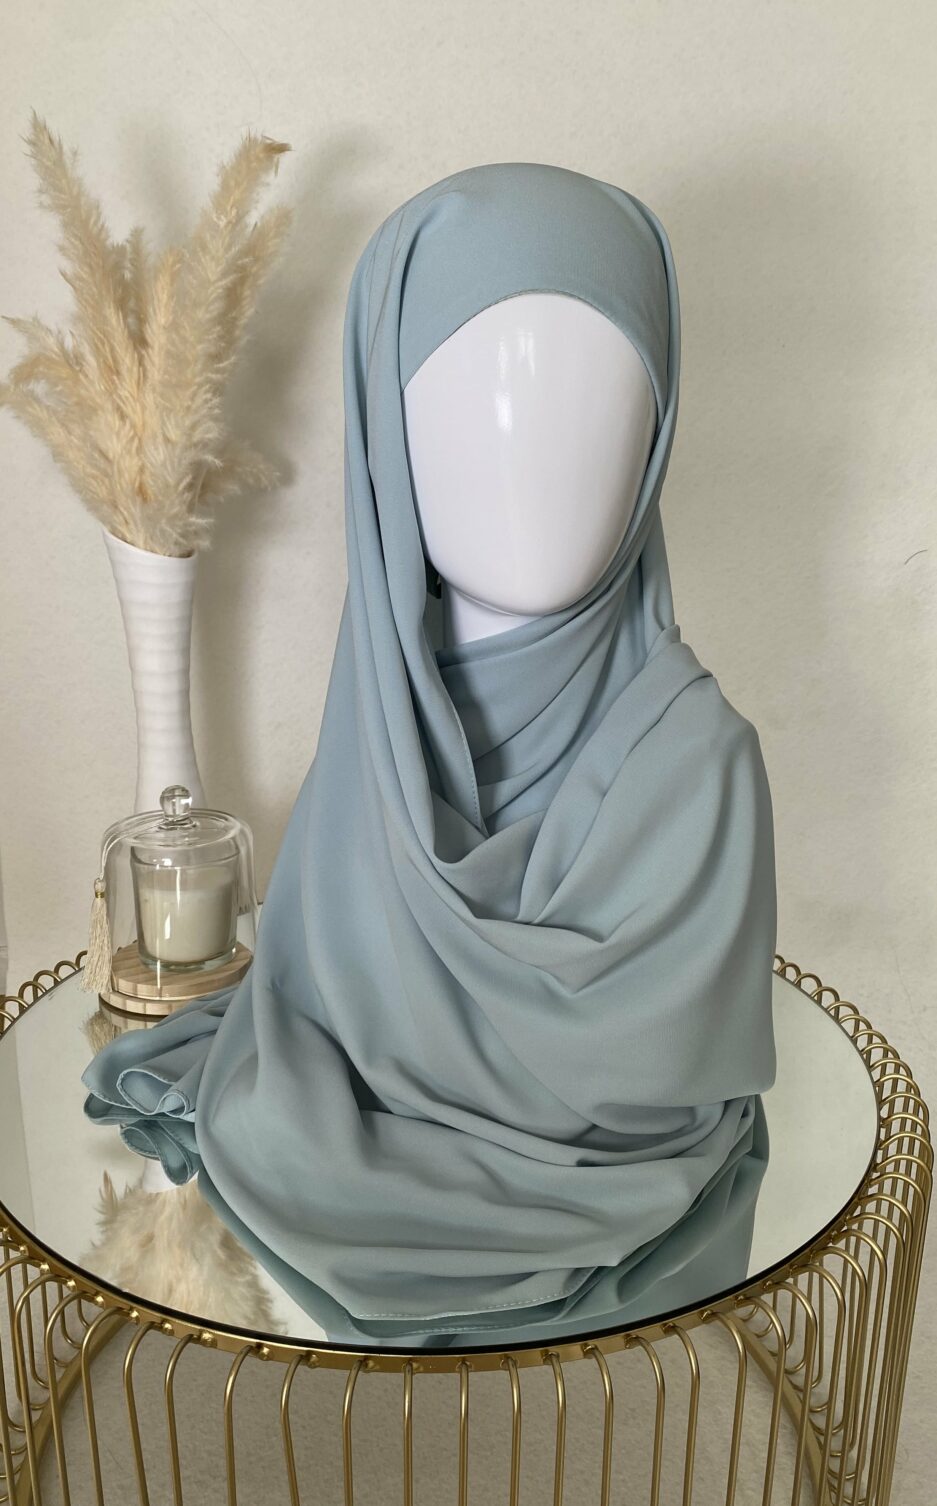 Vente en ligne hijab vert d'eau à enfiler avec bonnet, en gros et au détail voile soie de médine de bonne qualité 100% opaque, long, livraison rapide en 24H Nouveau hijab en soie de médine à enfilé avec bonnet intégrer, Cendrijab est situé dans le nord de la France